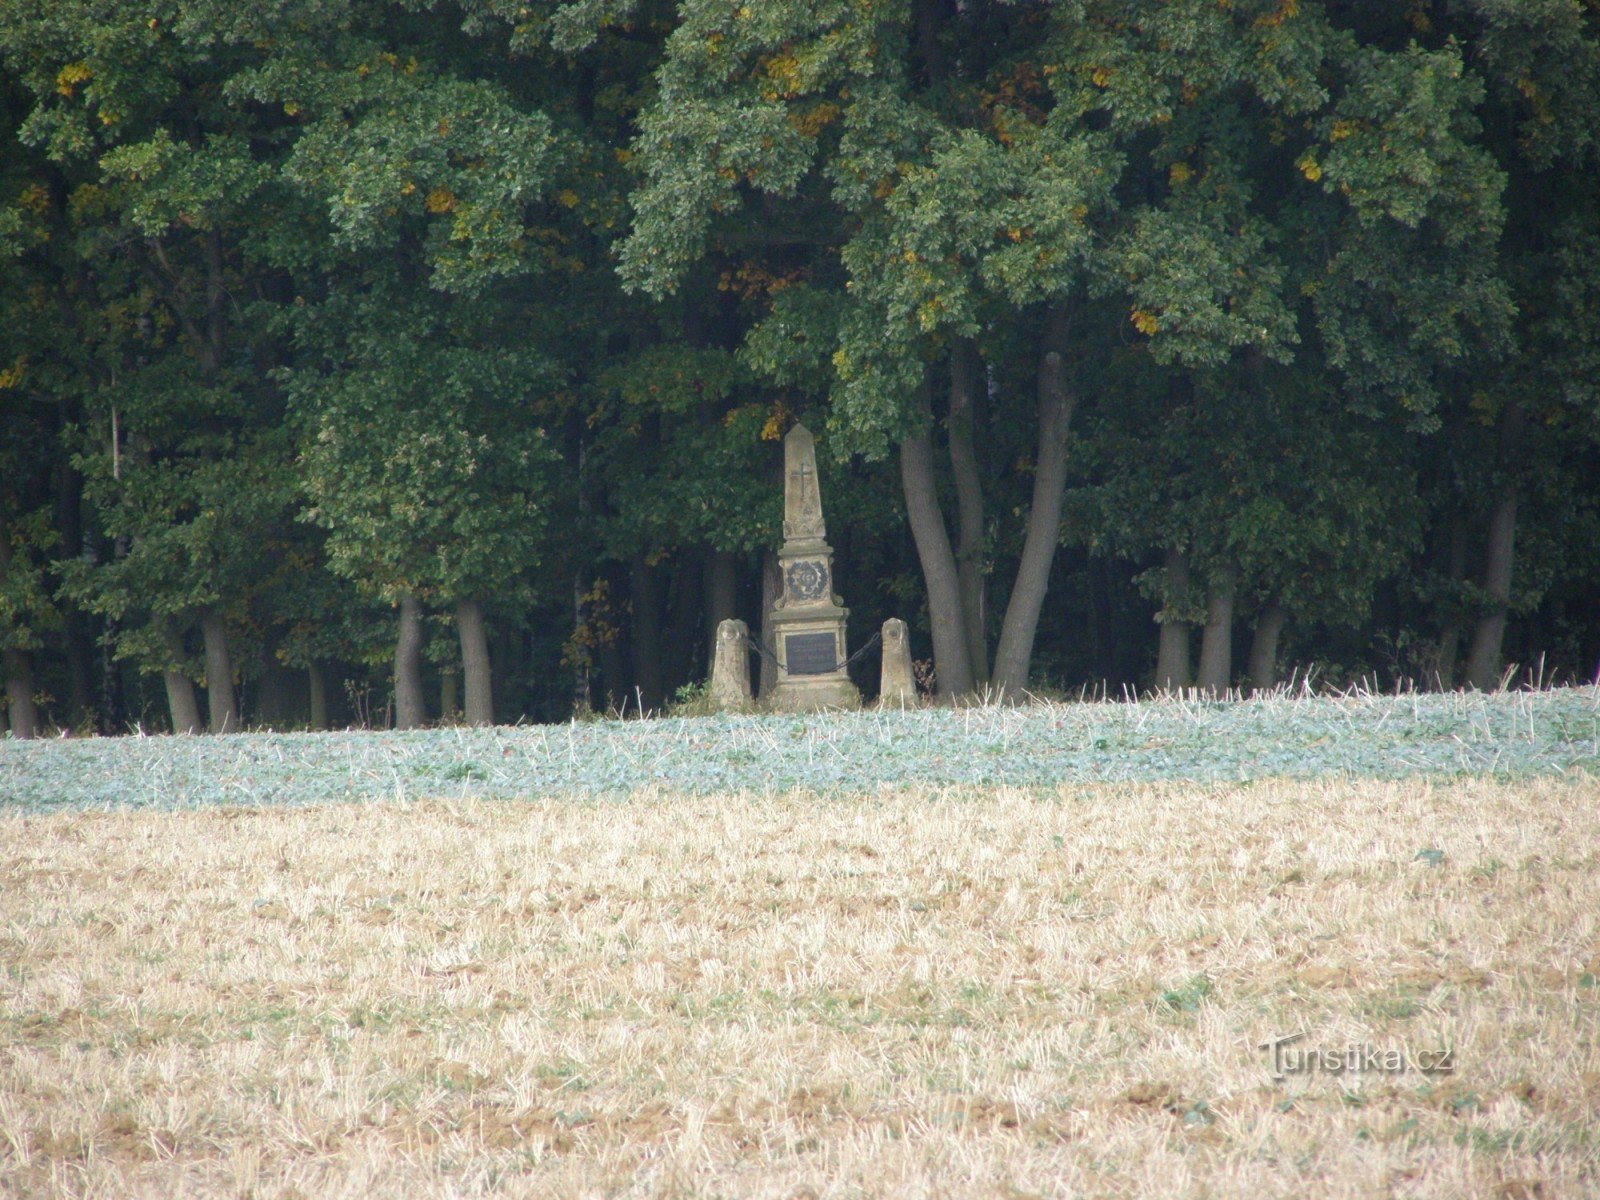 Les Svíb - monument to the Austrian 26th Infantry Regiment